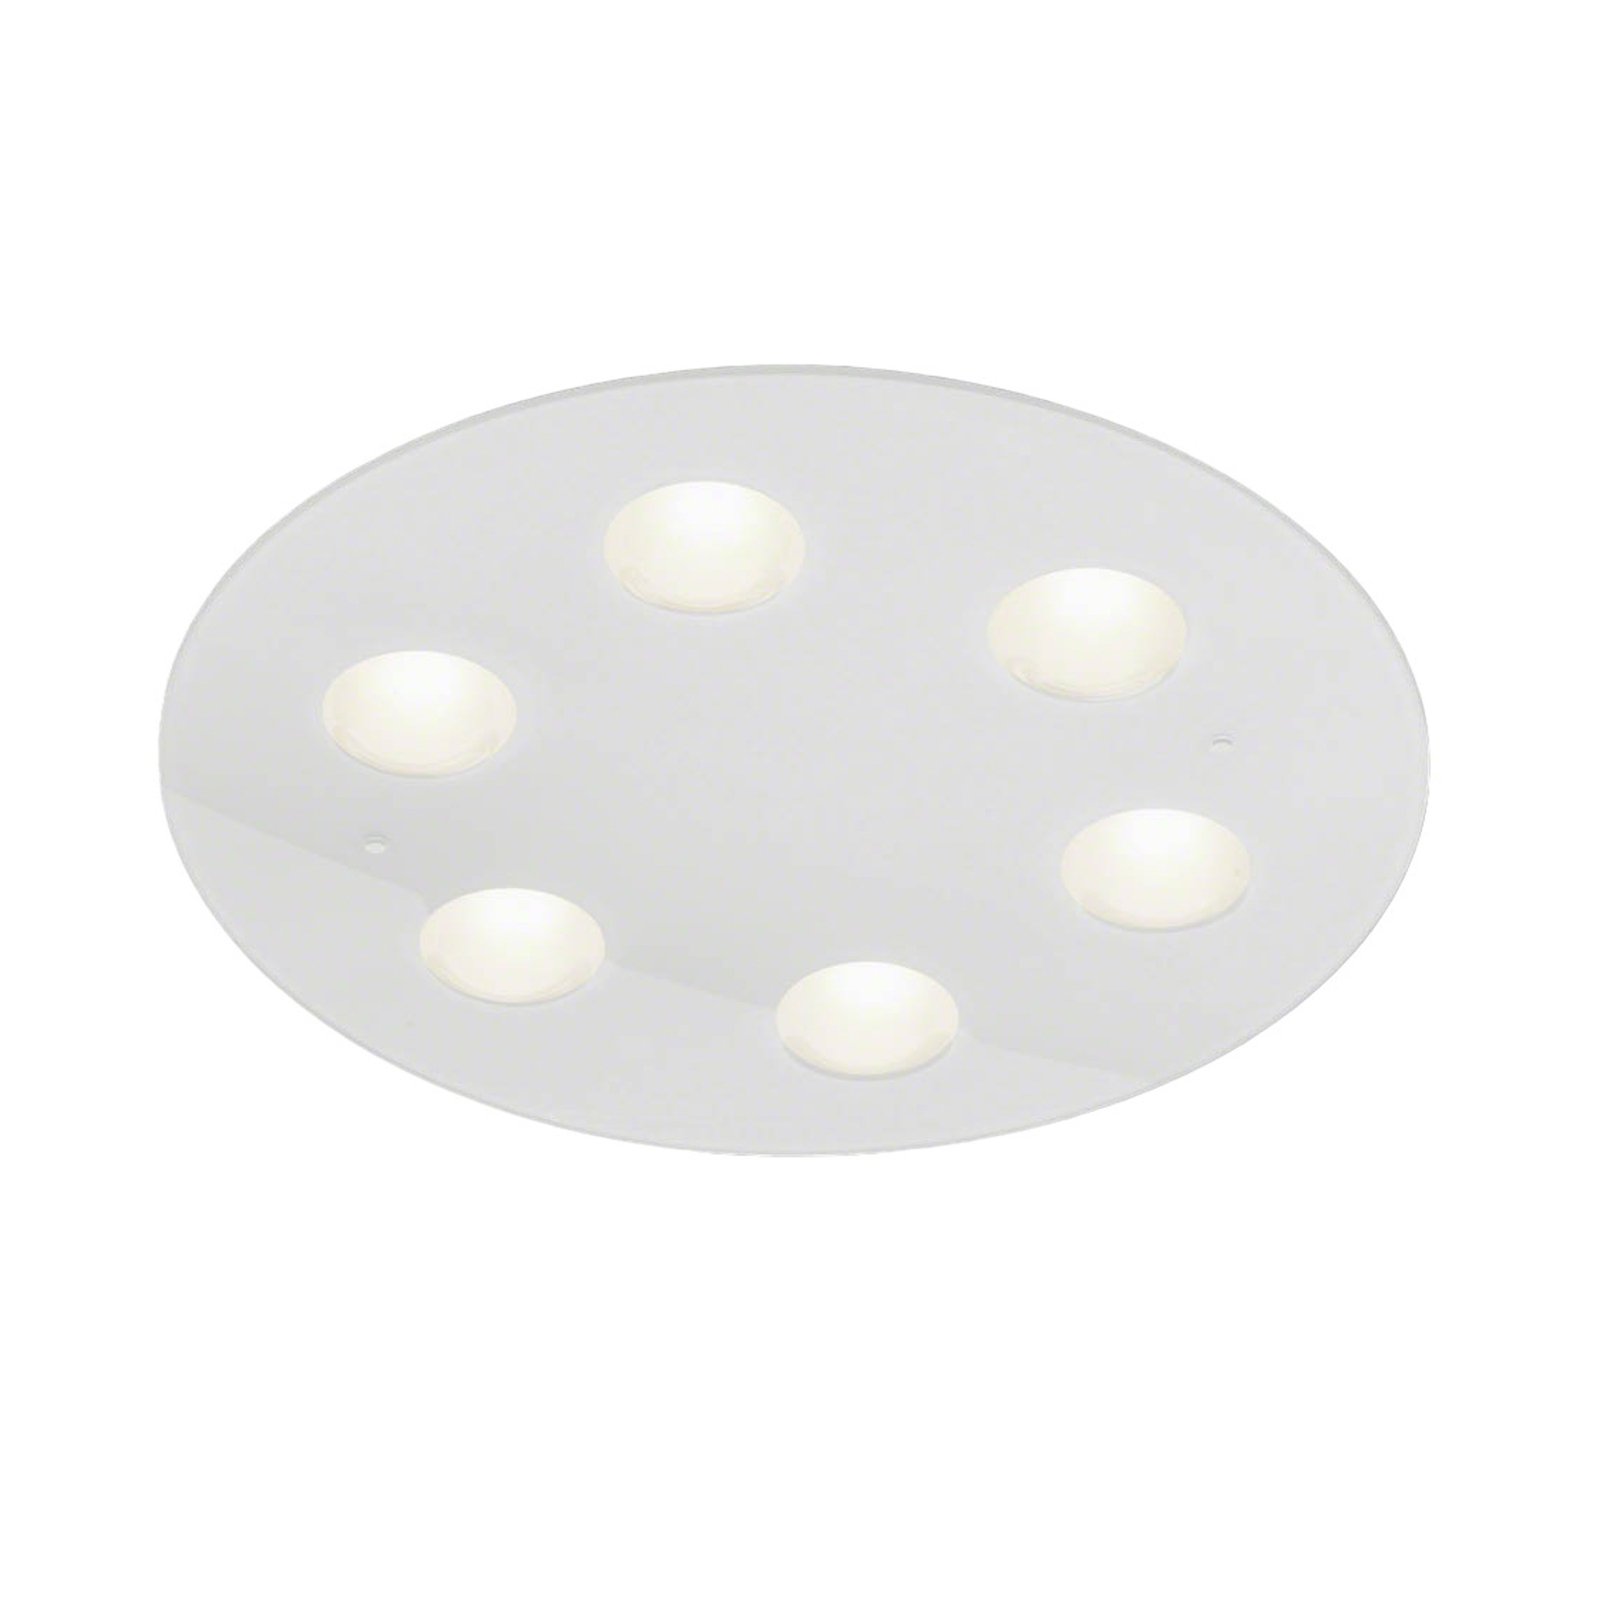 Helestra Nomi LED-Deckenleuchte Ø49cm dim weiß